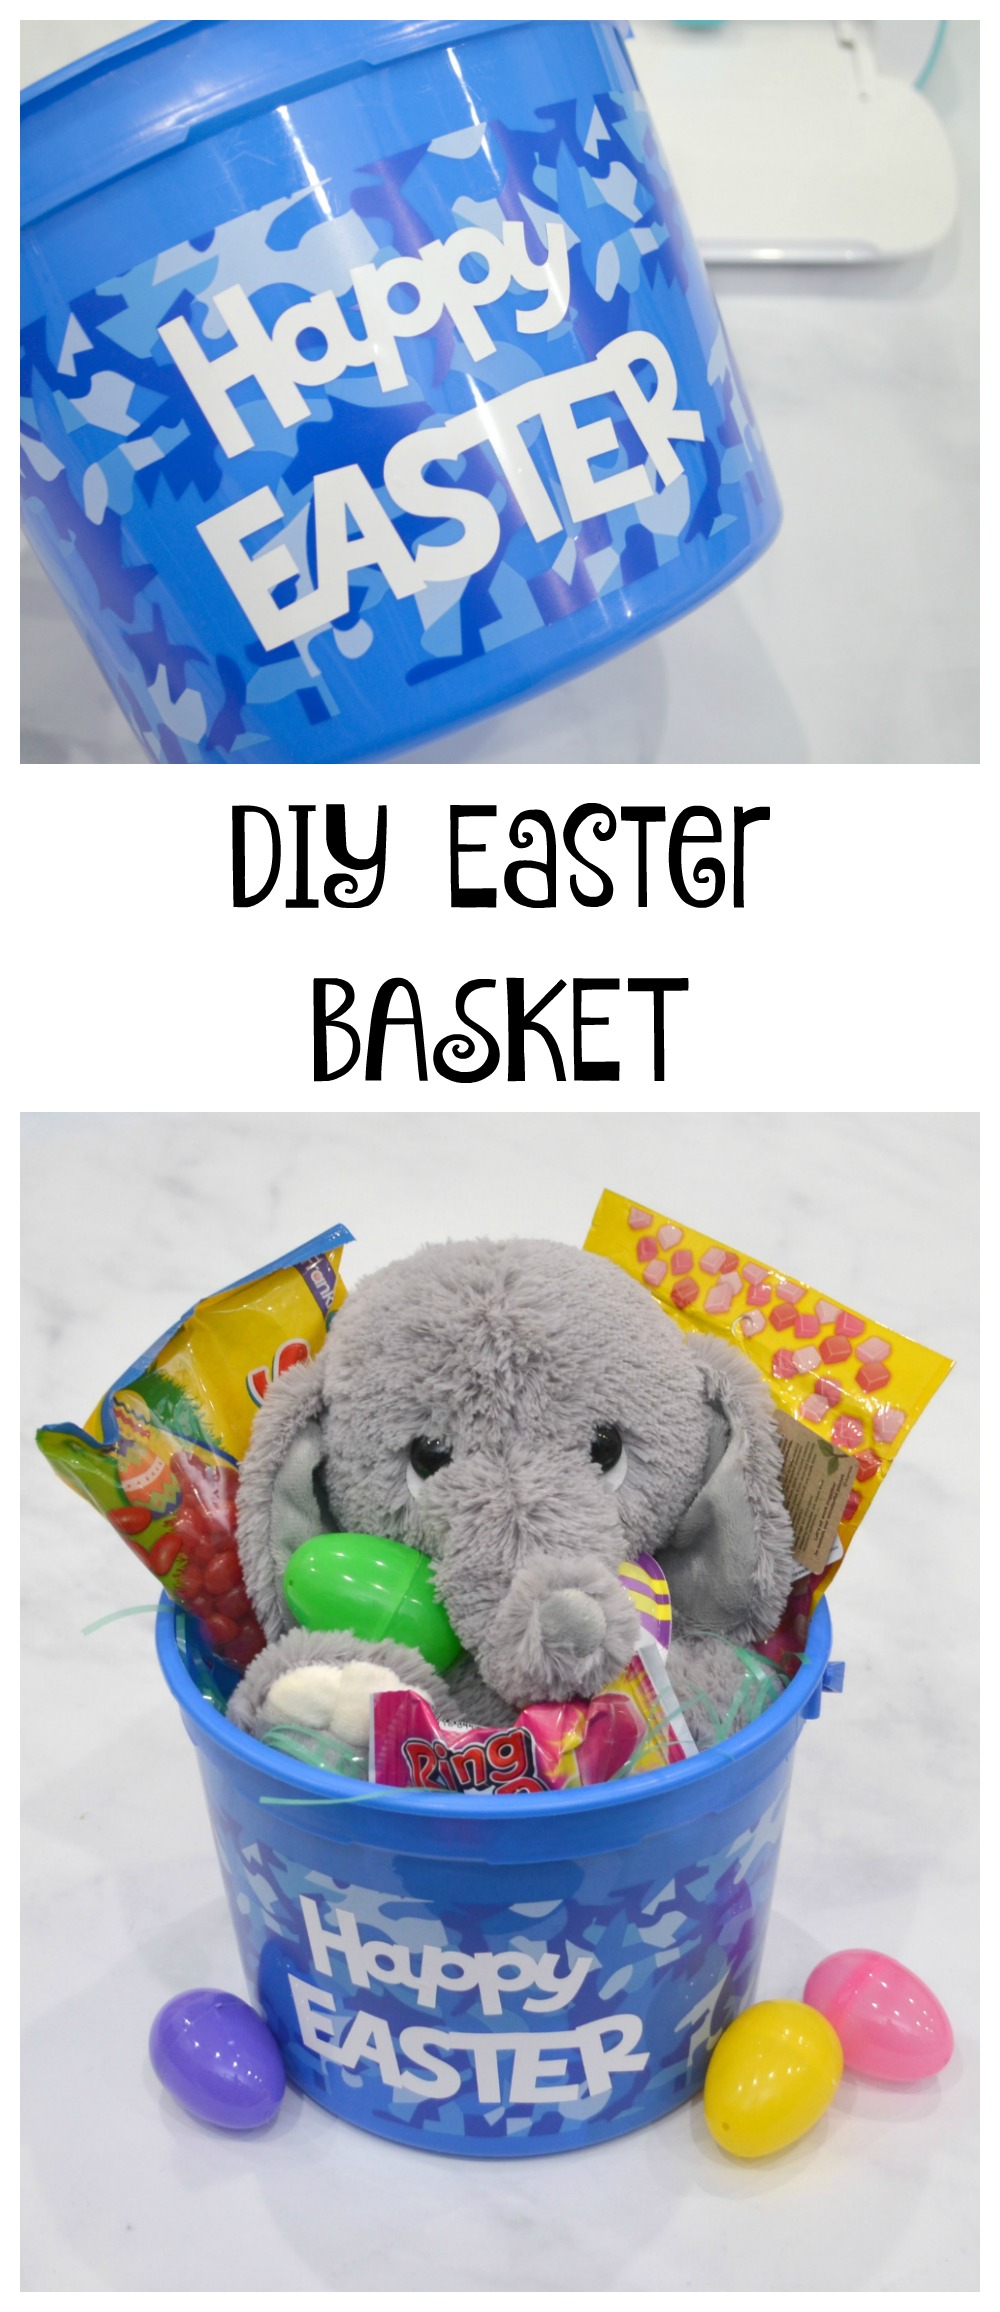 DIY Easter Basket